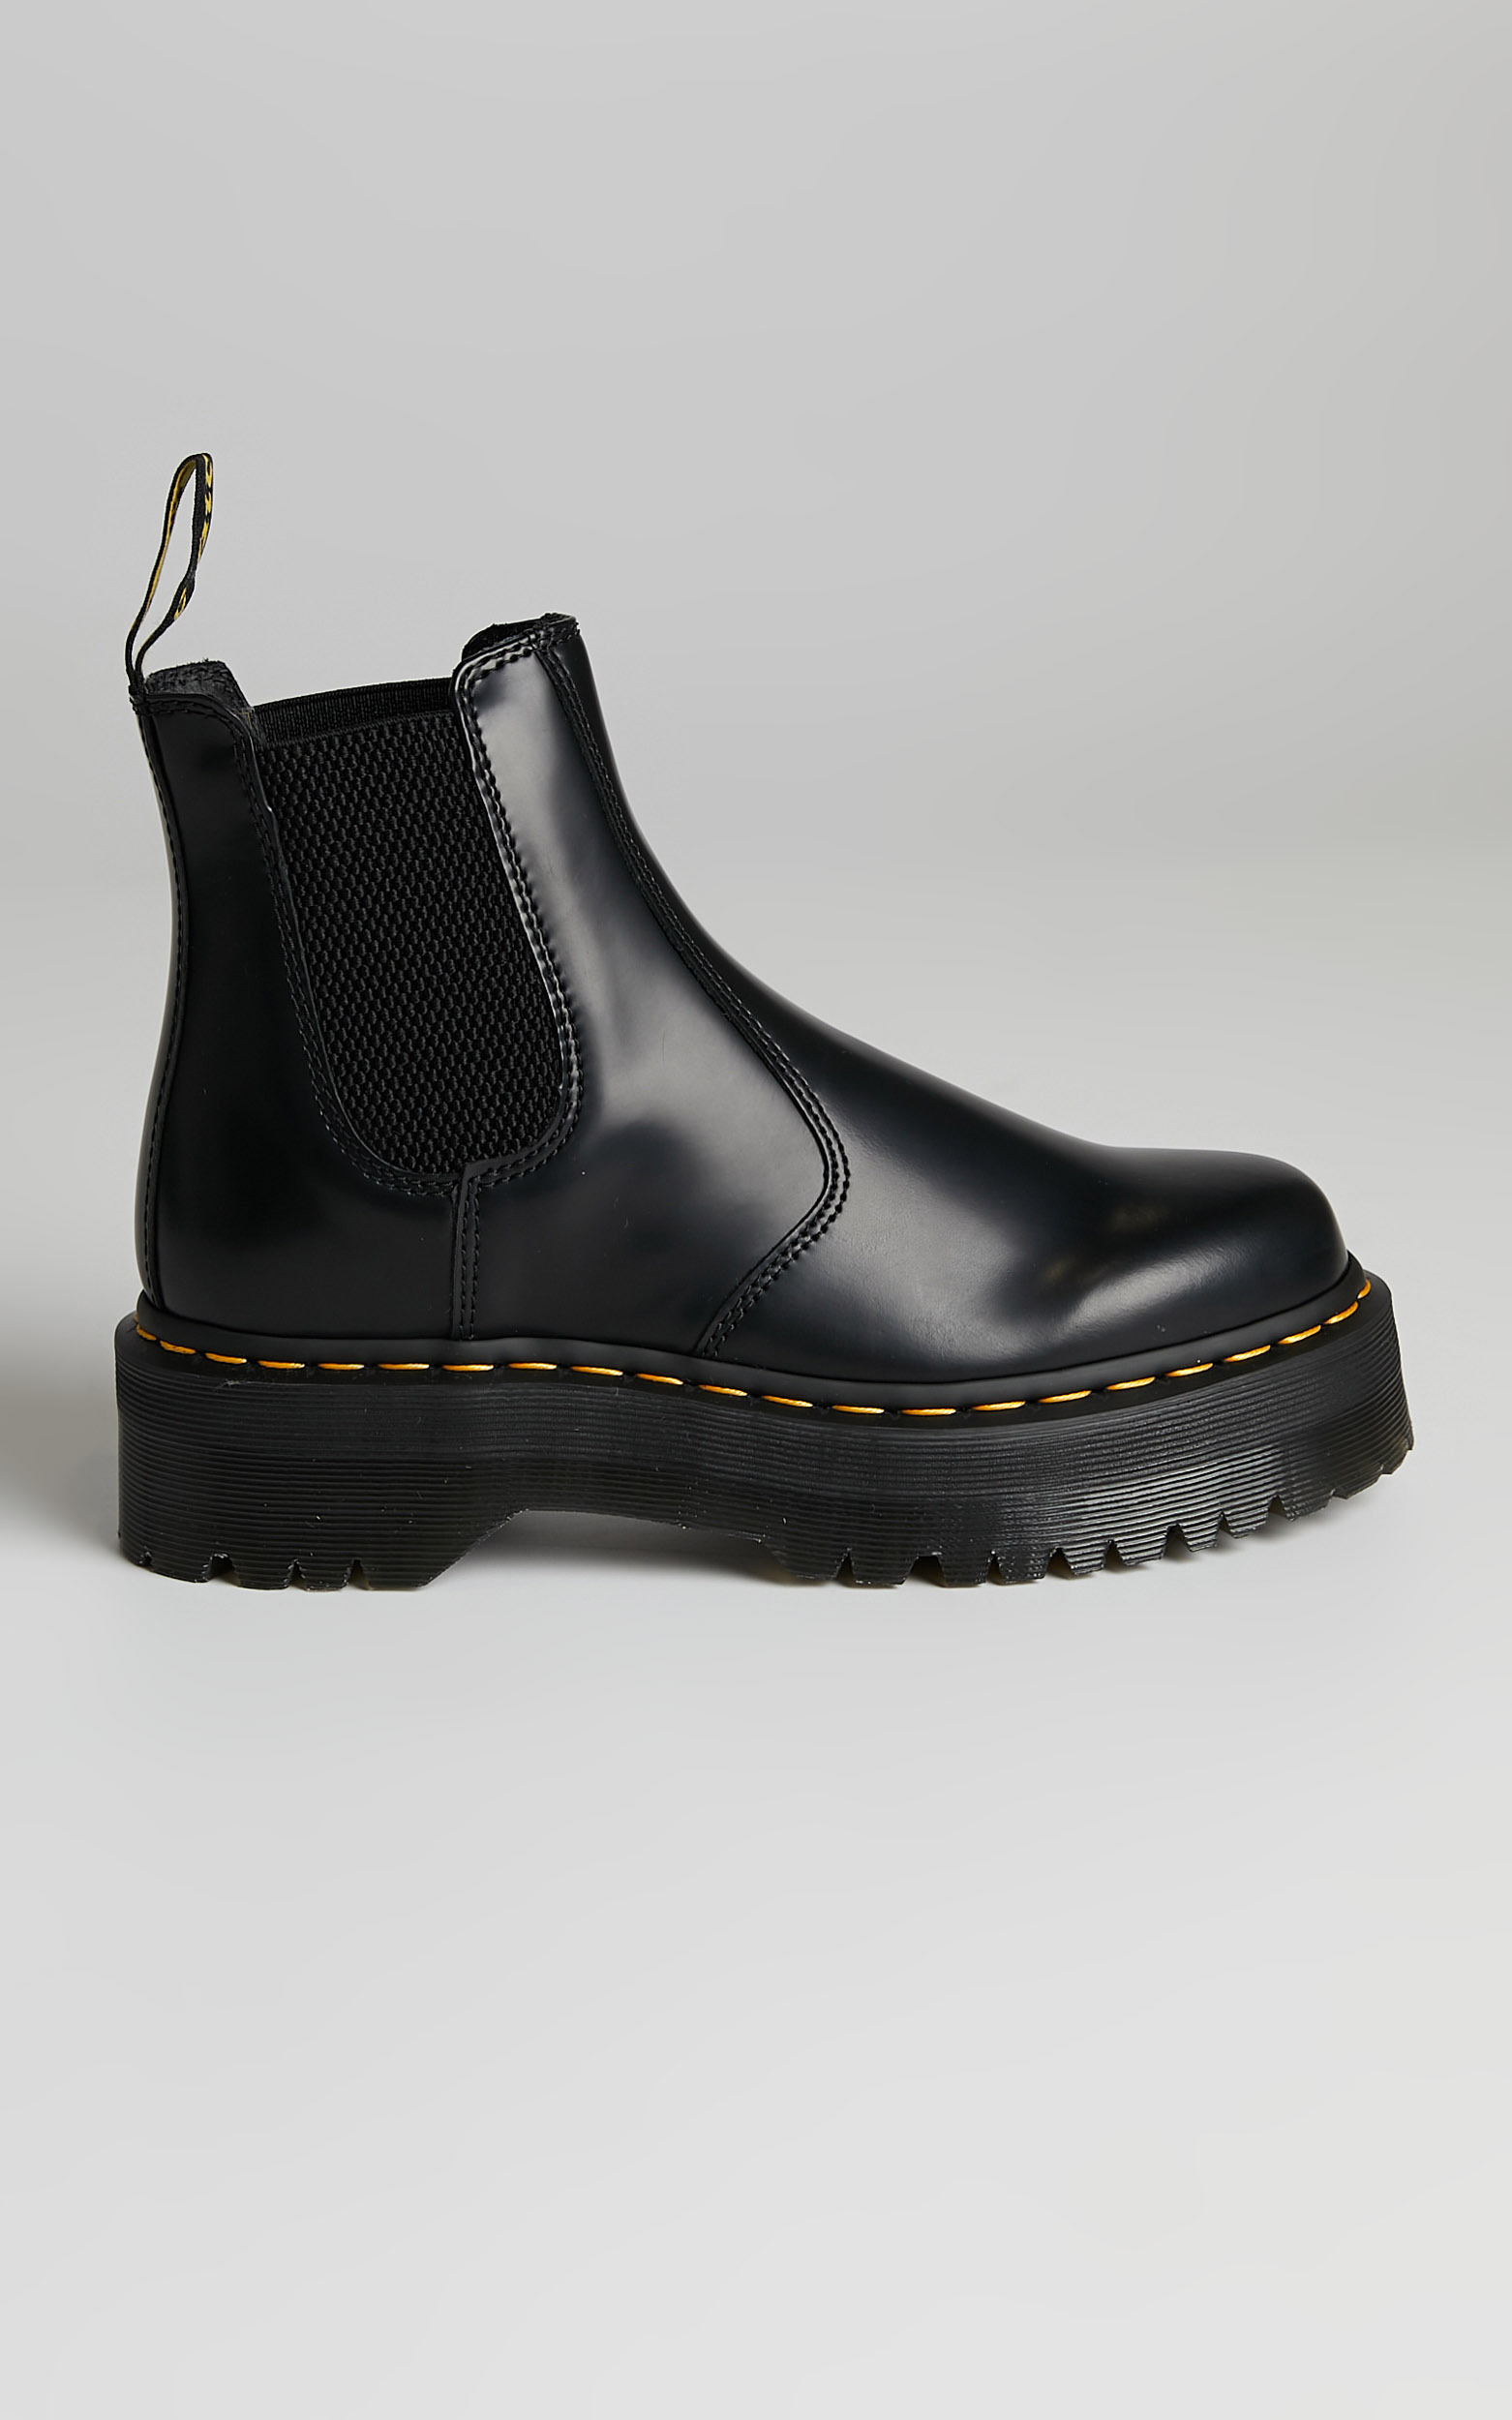 Dr. Martens - 2976 Quad Chelsea Boots in Black Polished Smooth - 05, BLK1, hi-res image number null